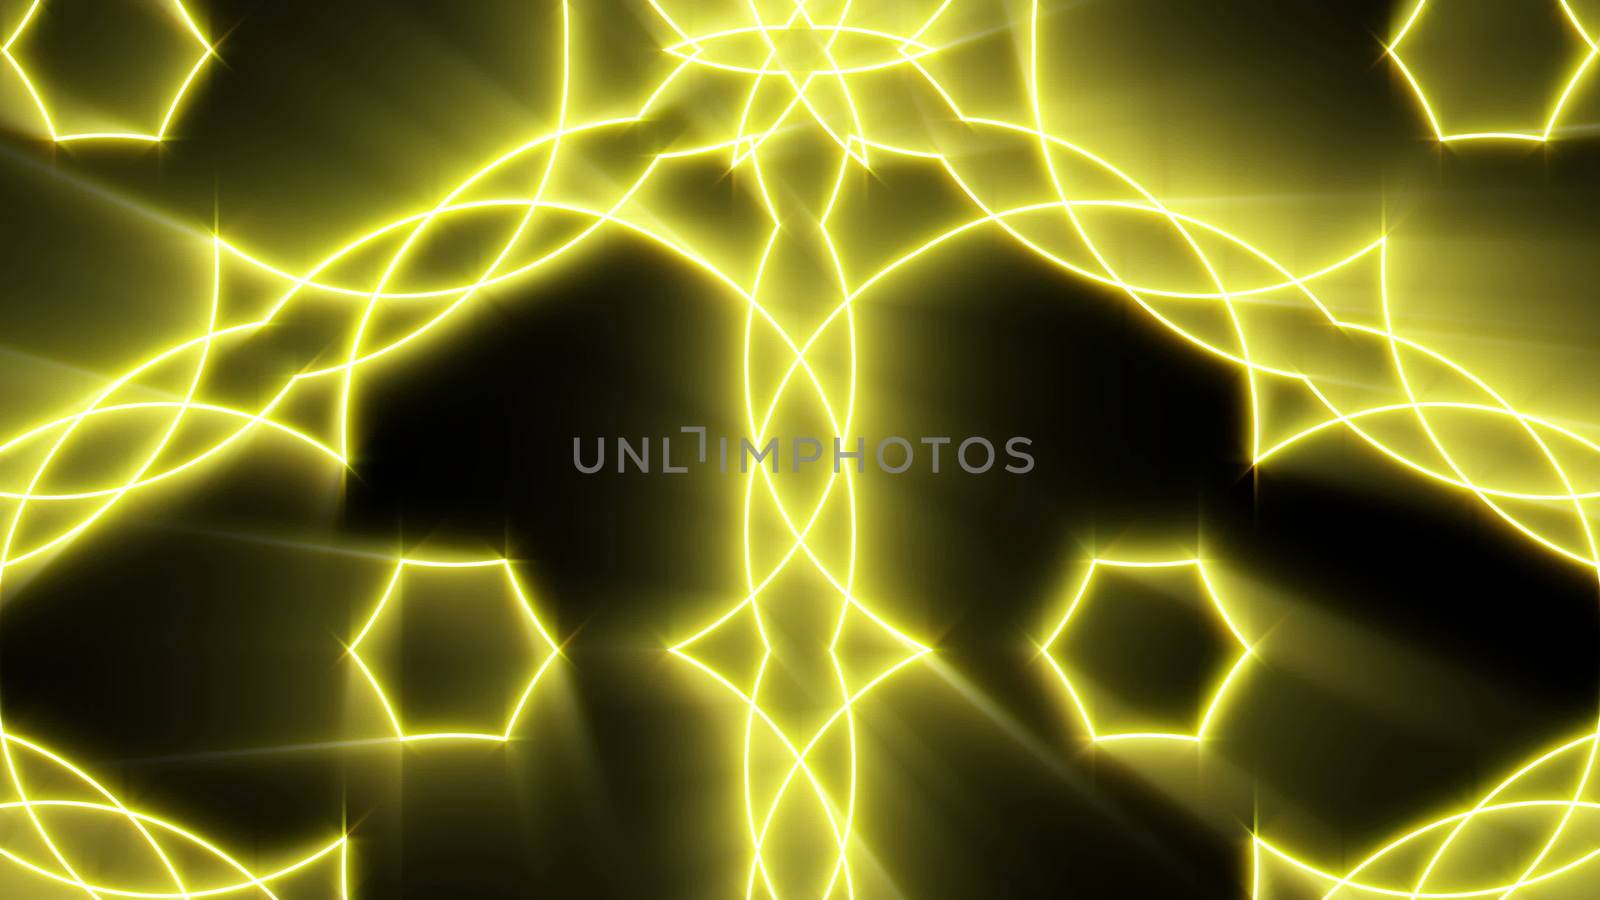 Shining gold kaleidoscope with black background. Glow elements